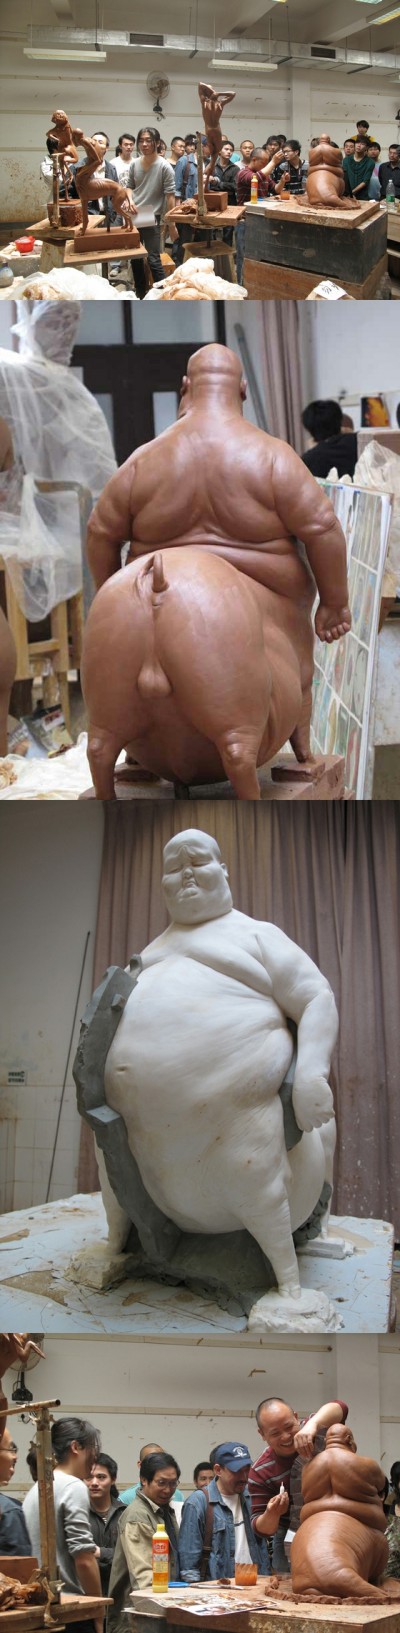 Sculpture Liu Xue